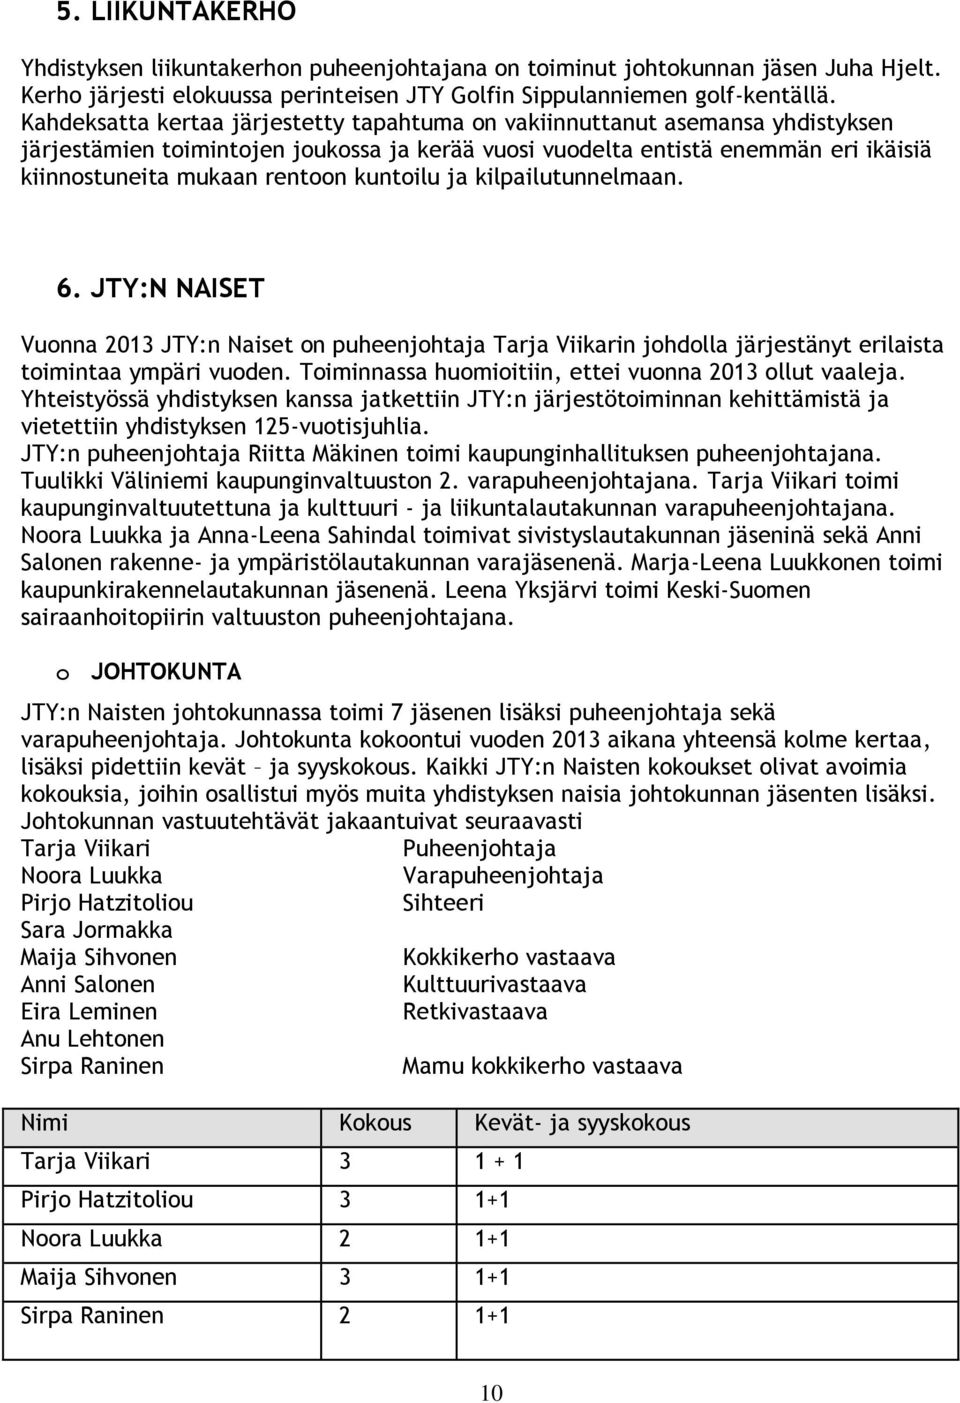 kuntoilu ja kilpailutunnelmaan. 6. JTY:N NAISET Vuonna 2013 JTY:n Naiset on puheenjohtaja Tarja Viikarin johdolla järjestänyt erilaista toimintaa ympäri vuoden.